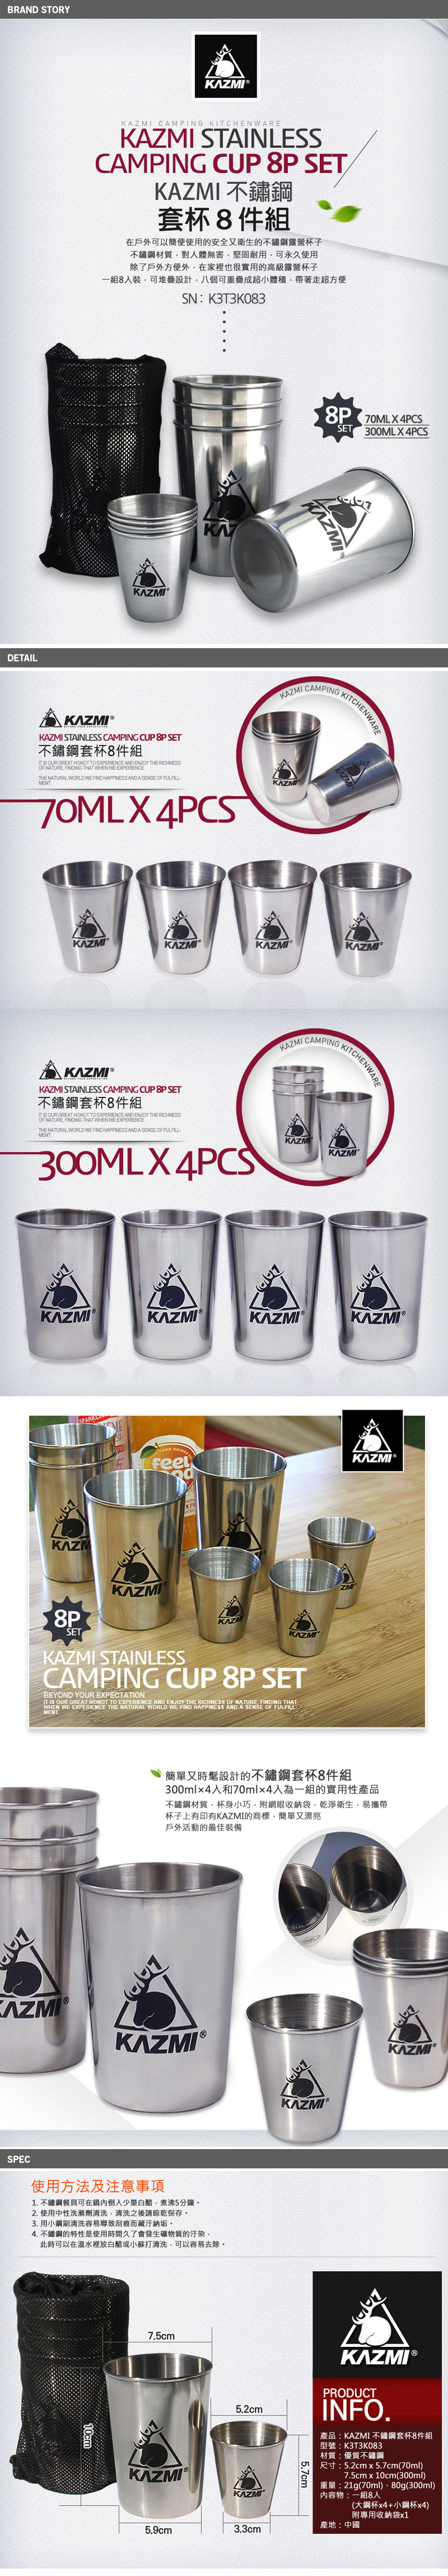 【山野賣客】KAZMI 不鏽鋼套杯8件組 K3T3K002